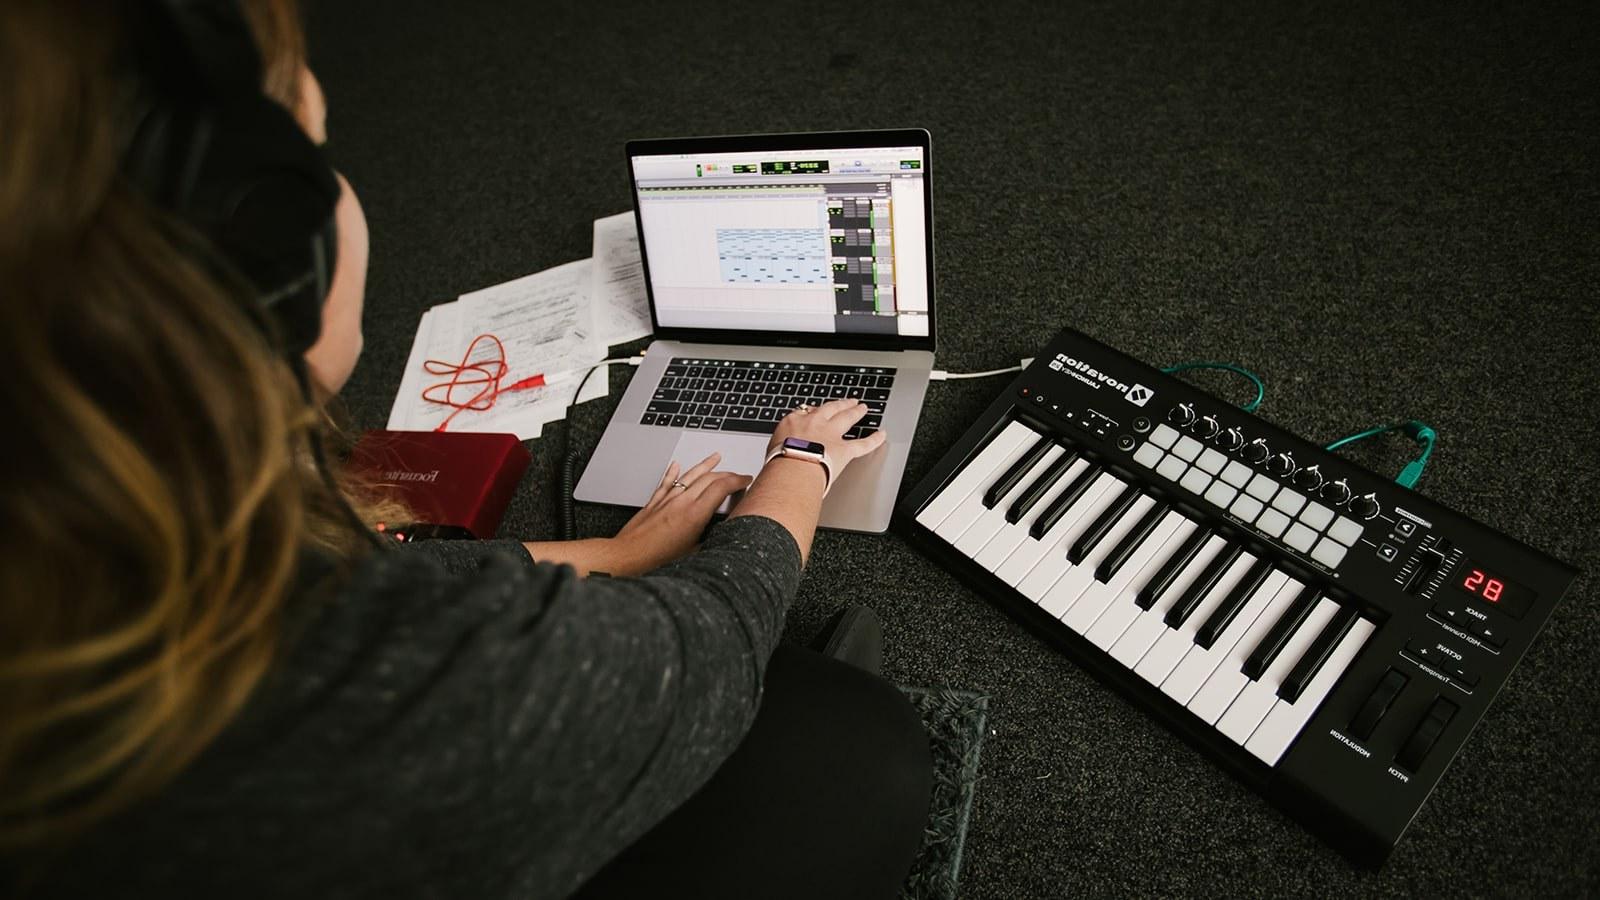 一个戴着耳机的学生坐在地板上，拿着笔记本电脑和电子键盘. Music editing software is on the laptop screen.